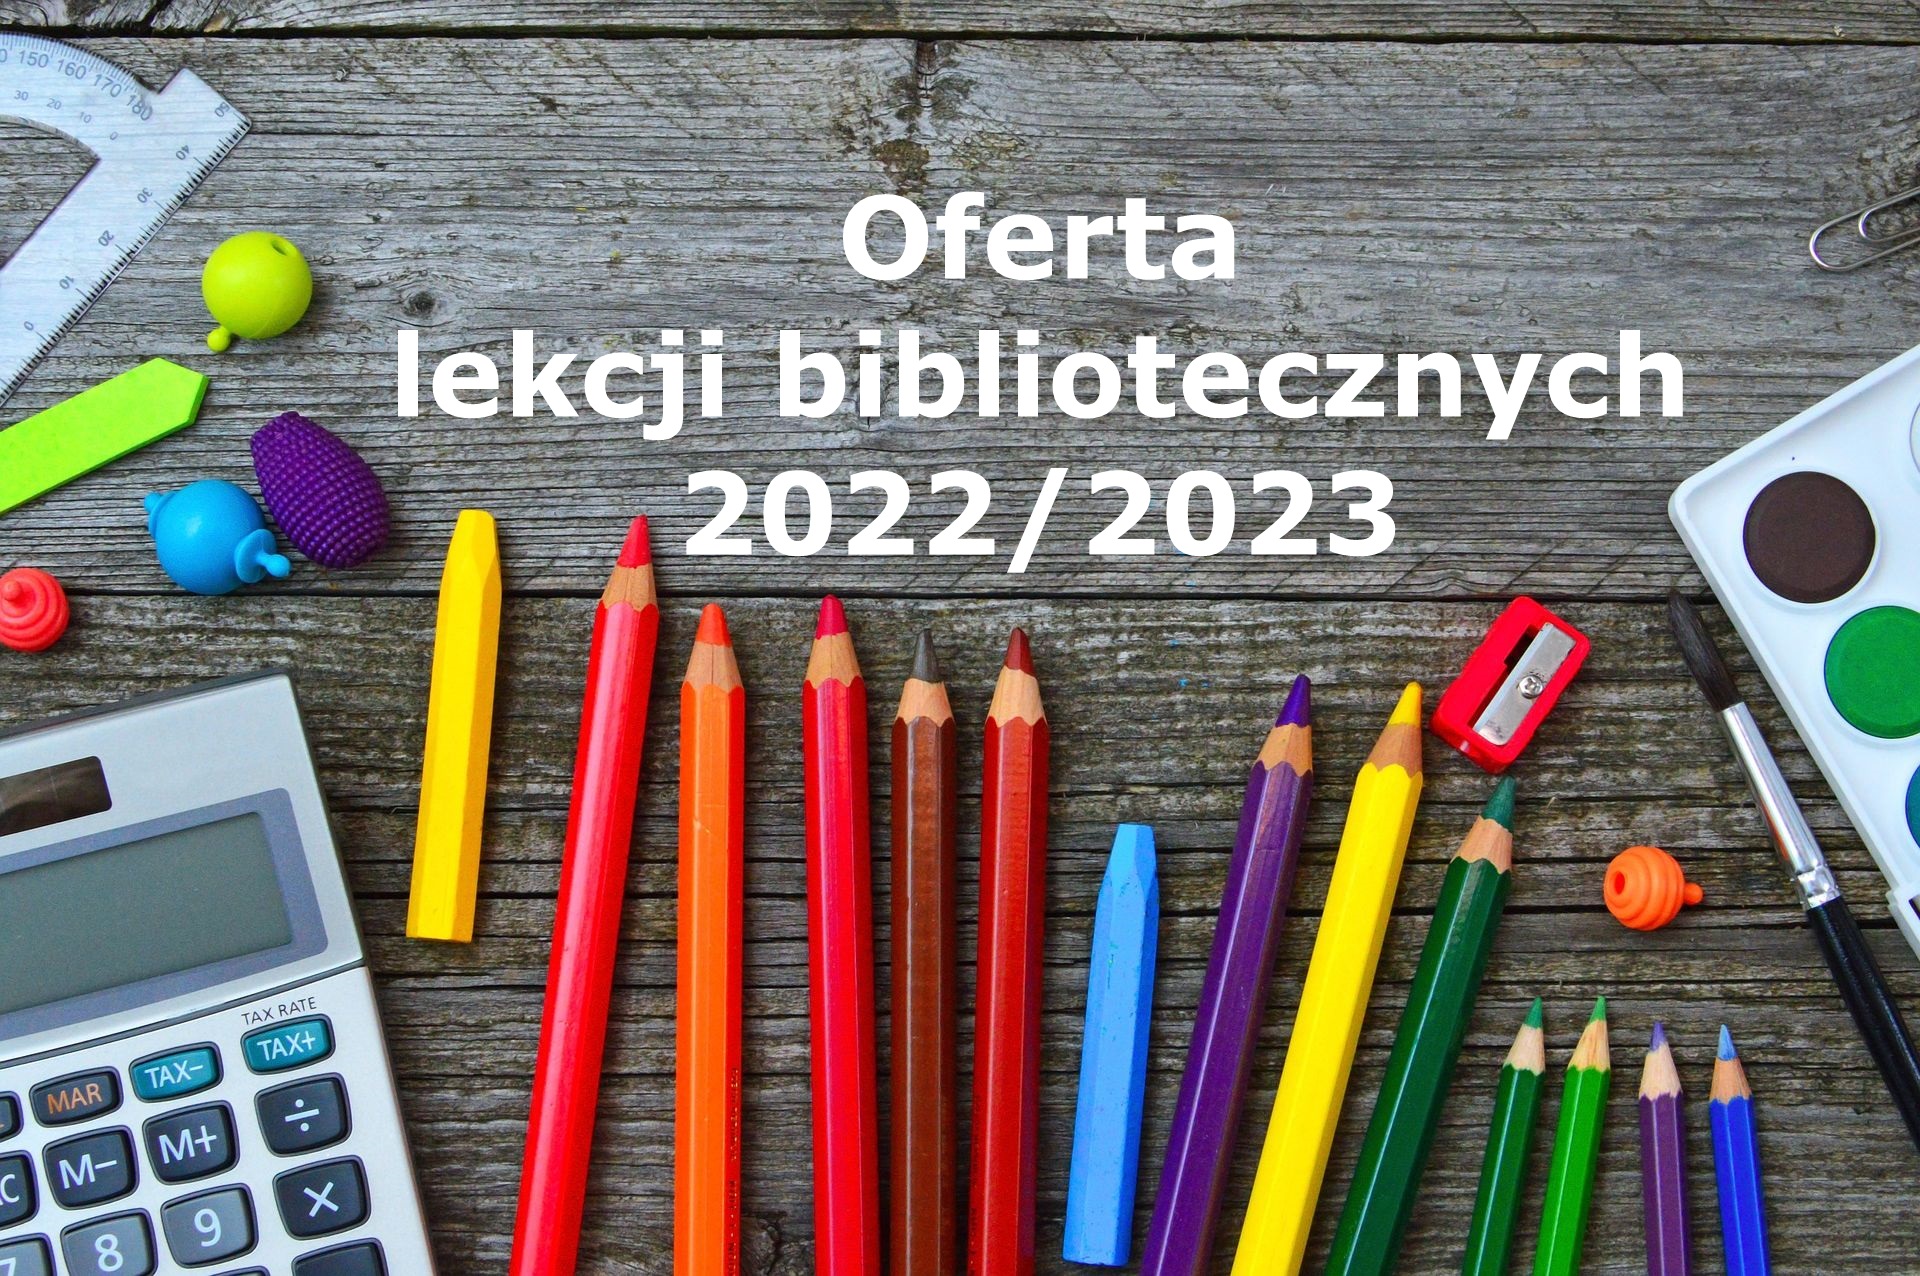 Biblioteczna oferta zajęć dla dzieci i młodzieży.